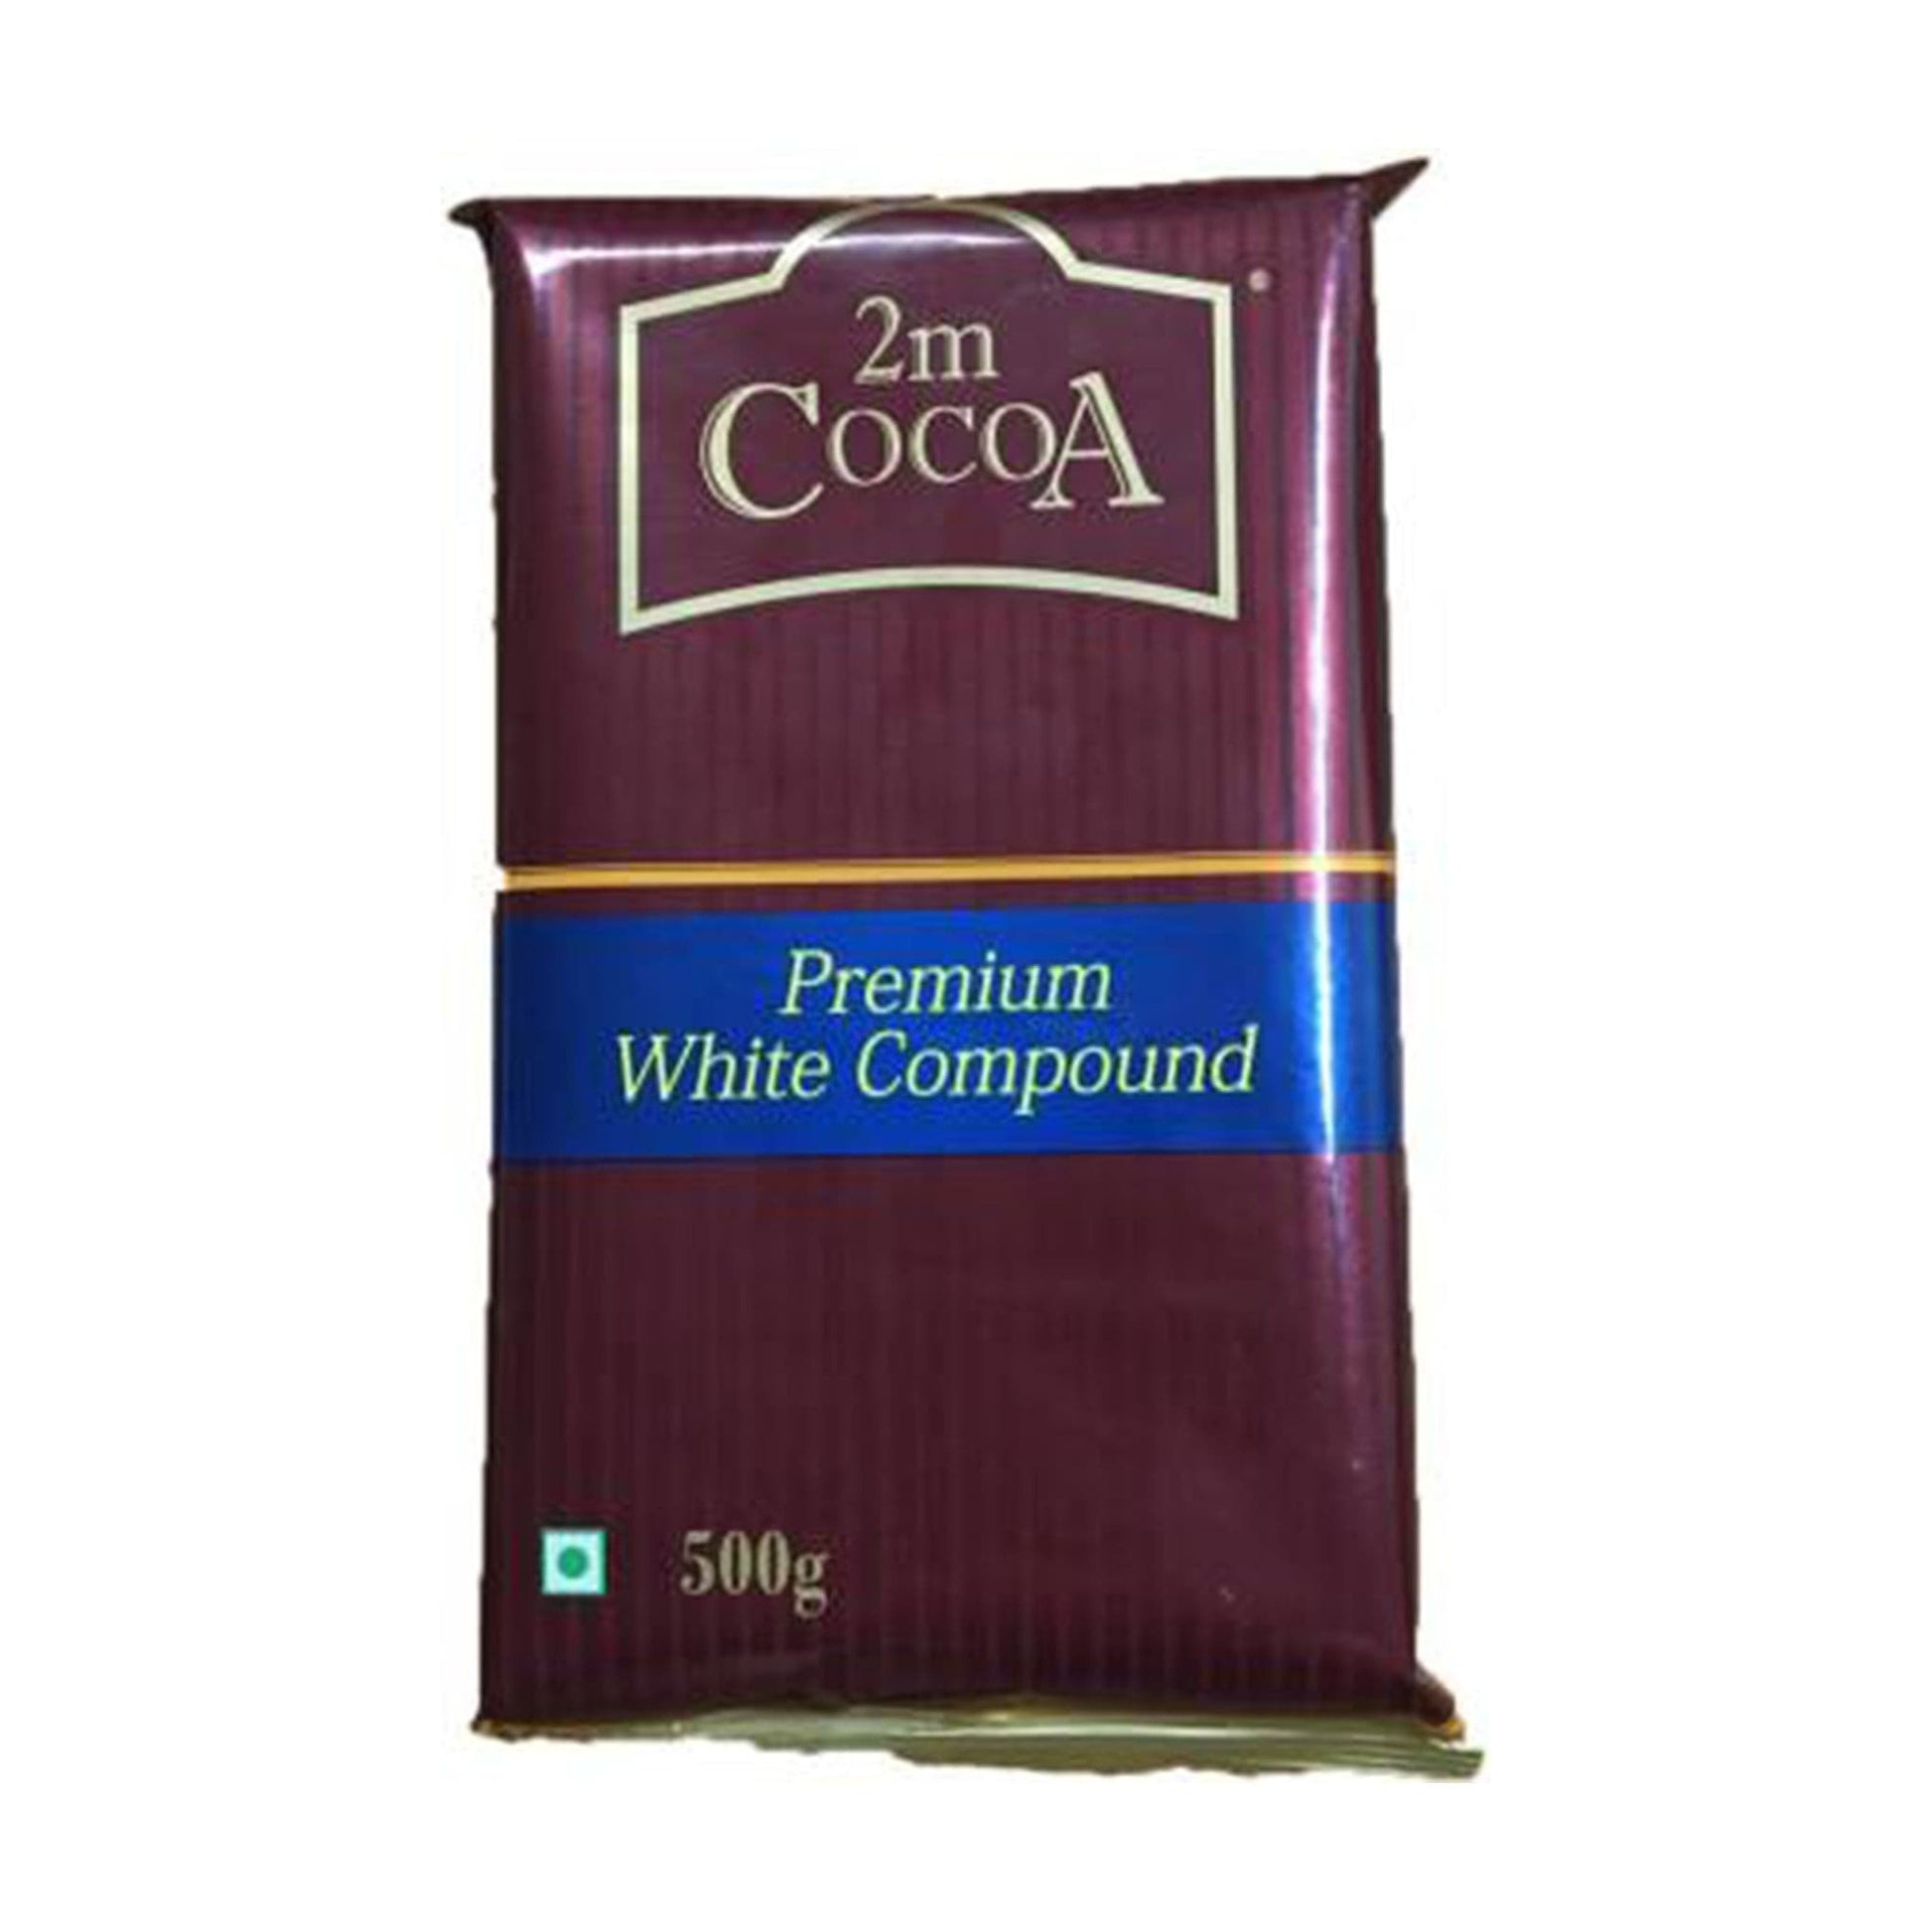 2M Cocoa White Compound (7097908625595)